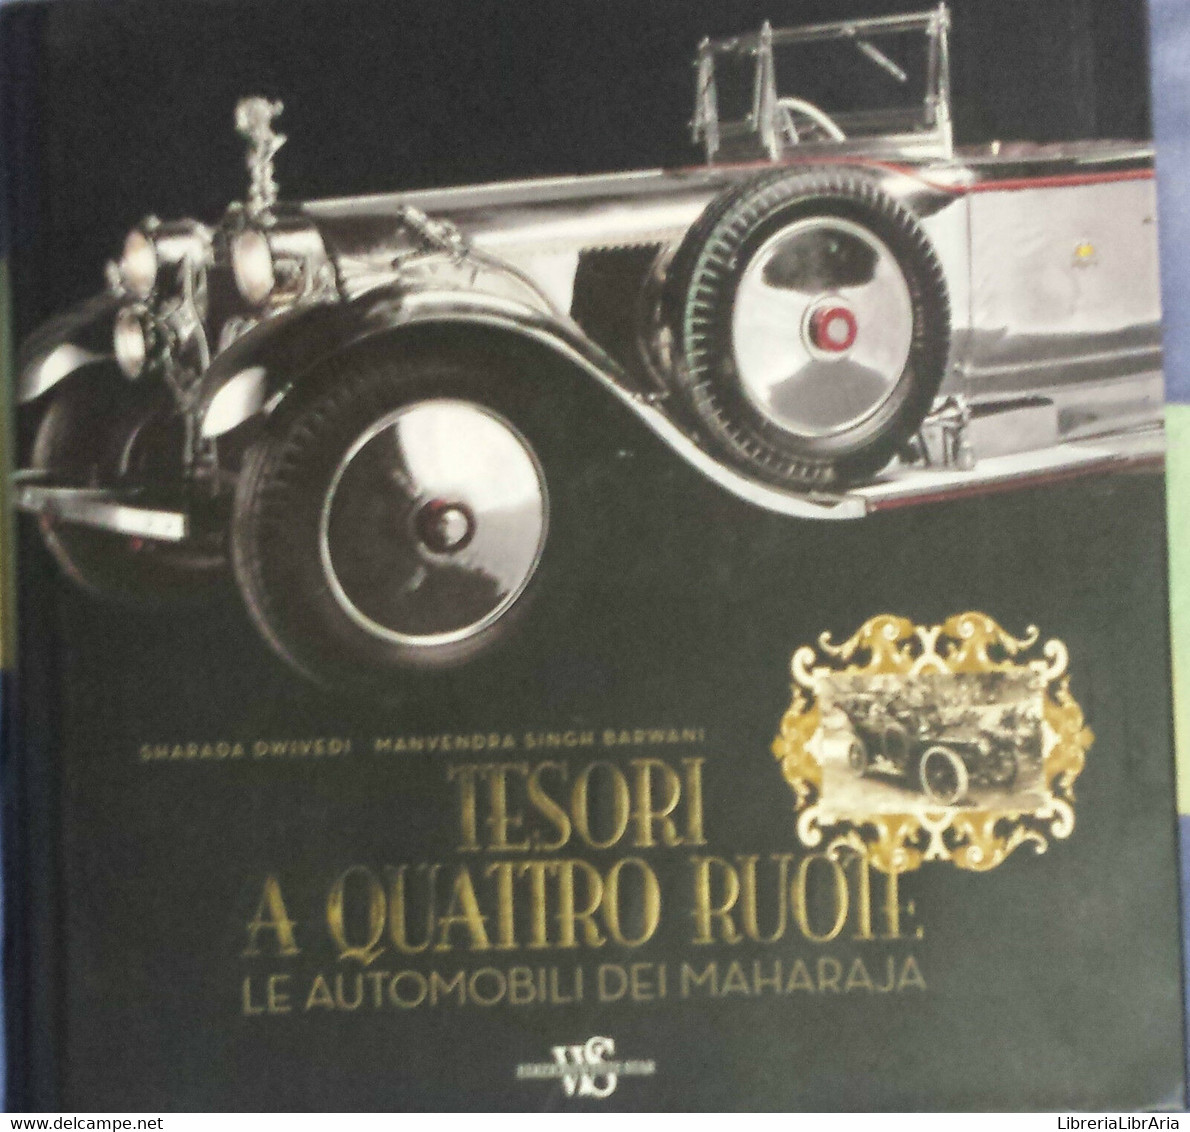 Tesori A Quattro Ruote. Le Automobili Dei Maharaja -AA. VV.-White Star -2008 - G - Arts, Architecture